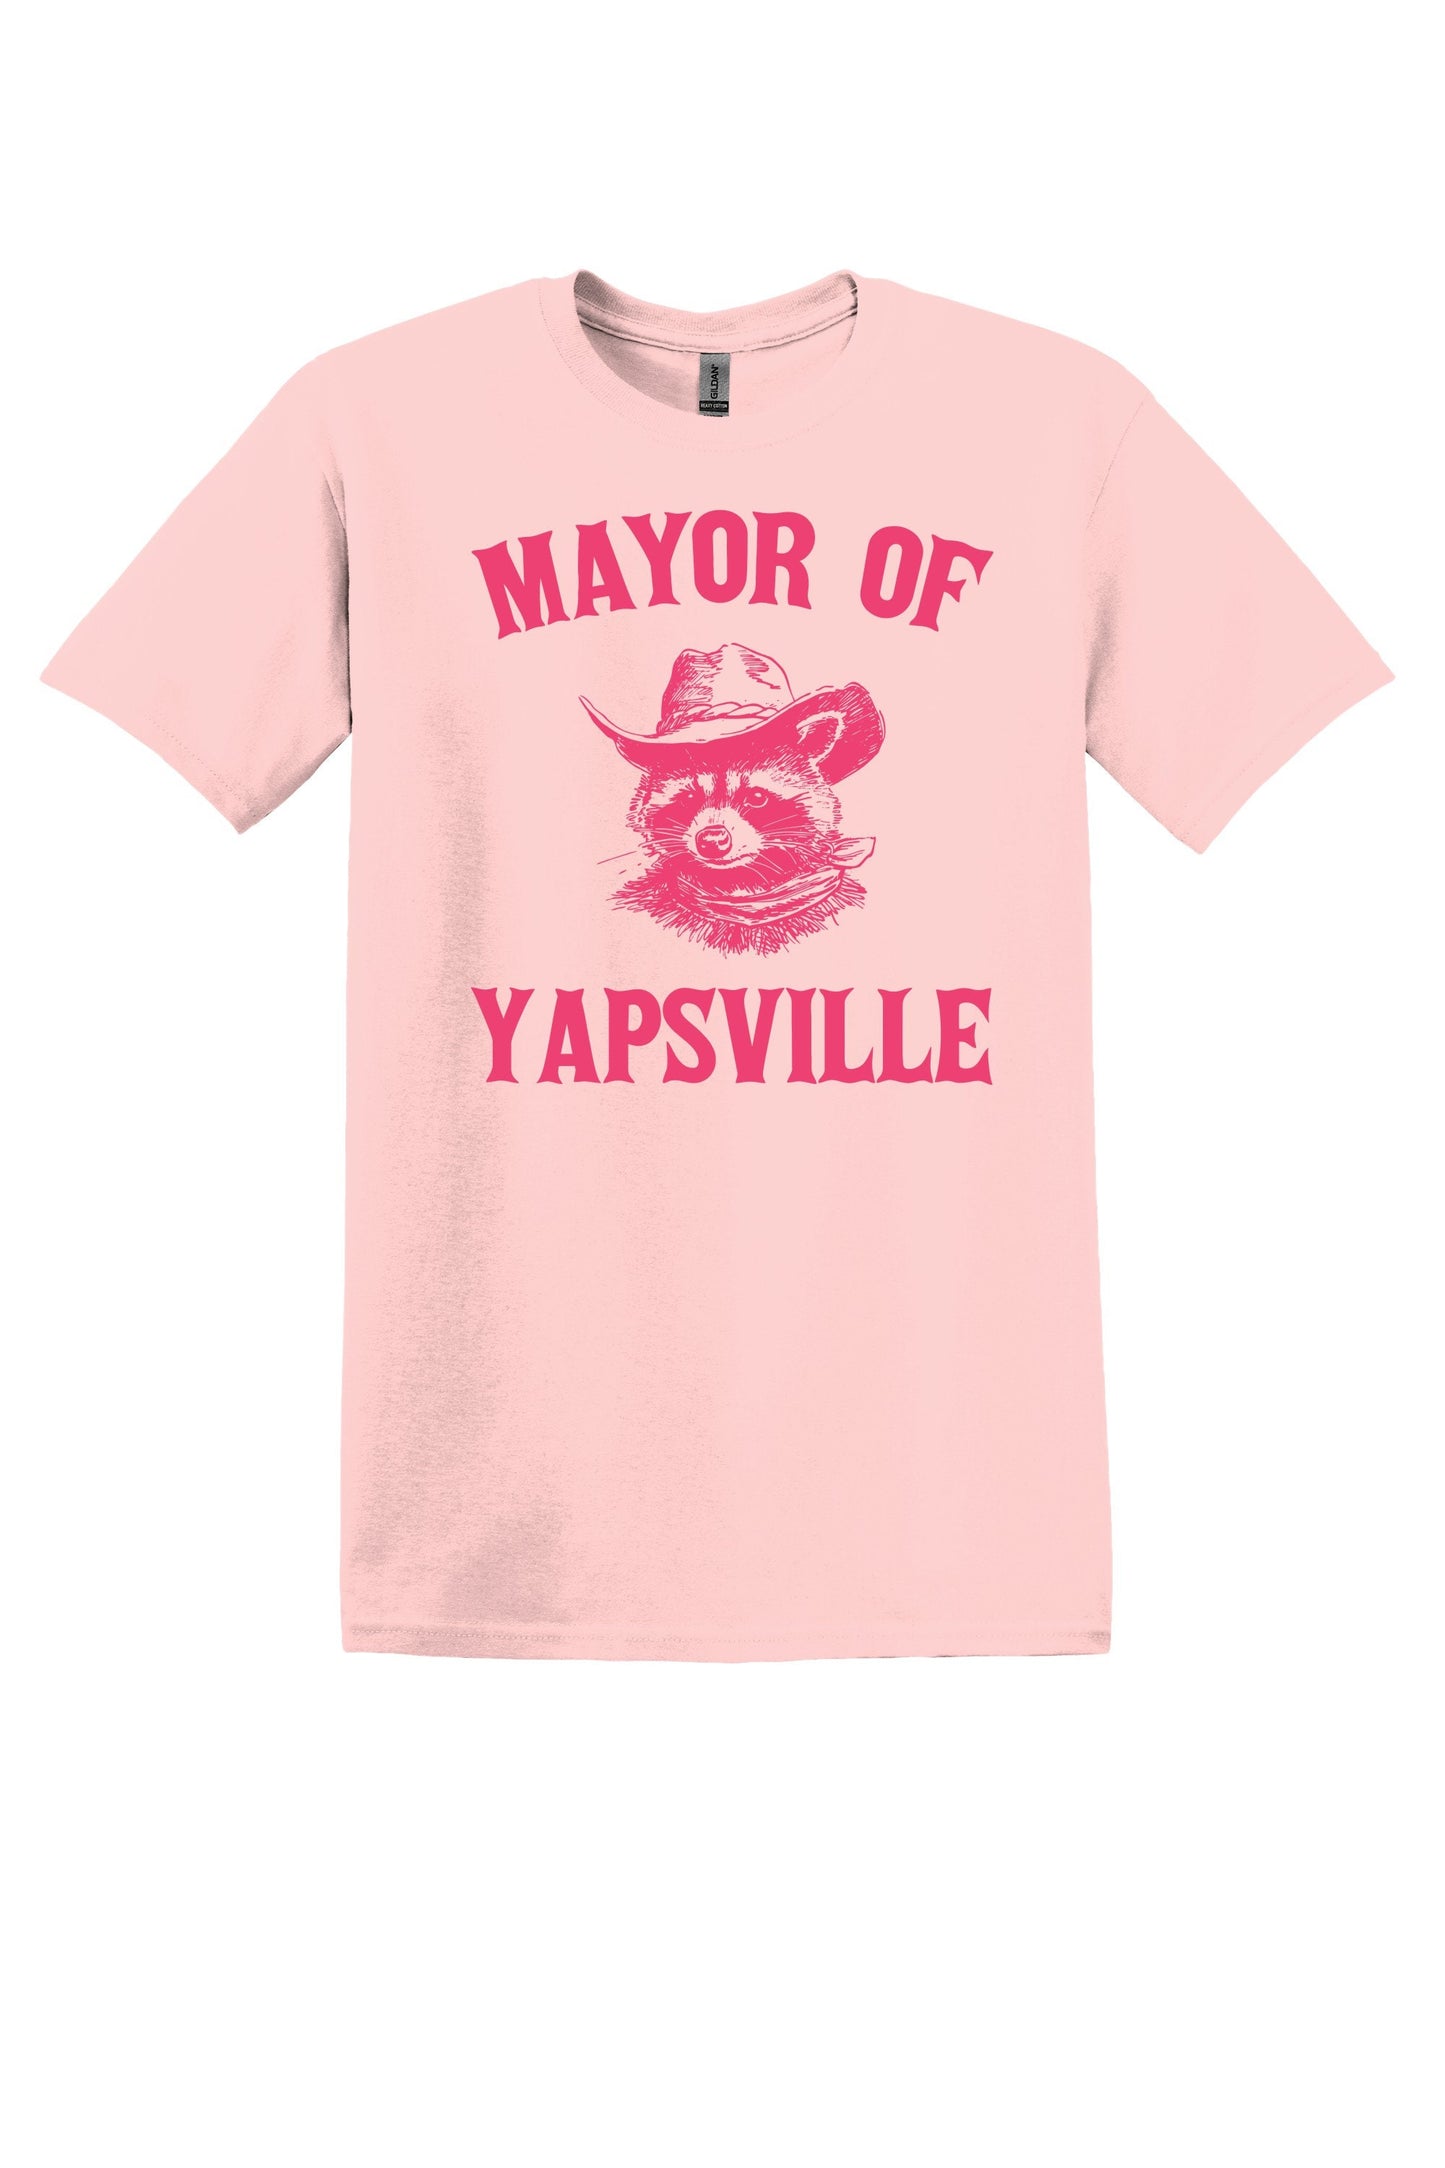 Mayor of Yapsville Graphic Tee - Fun Gift Idea!